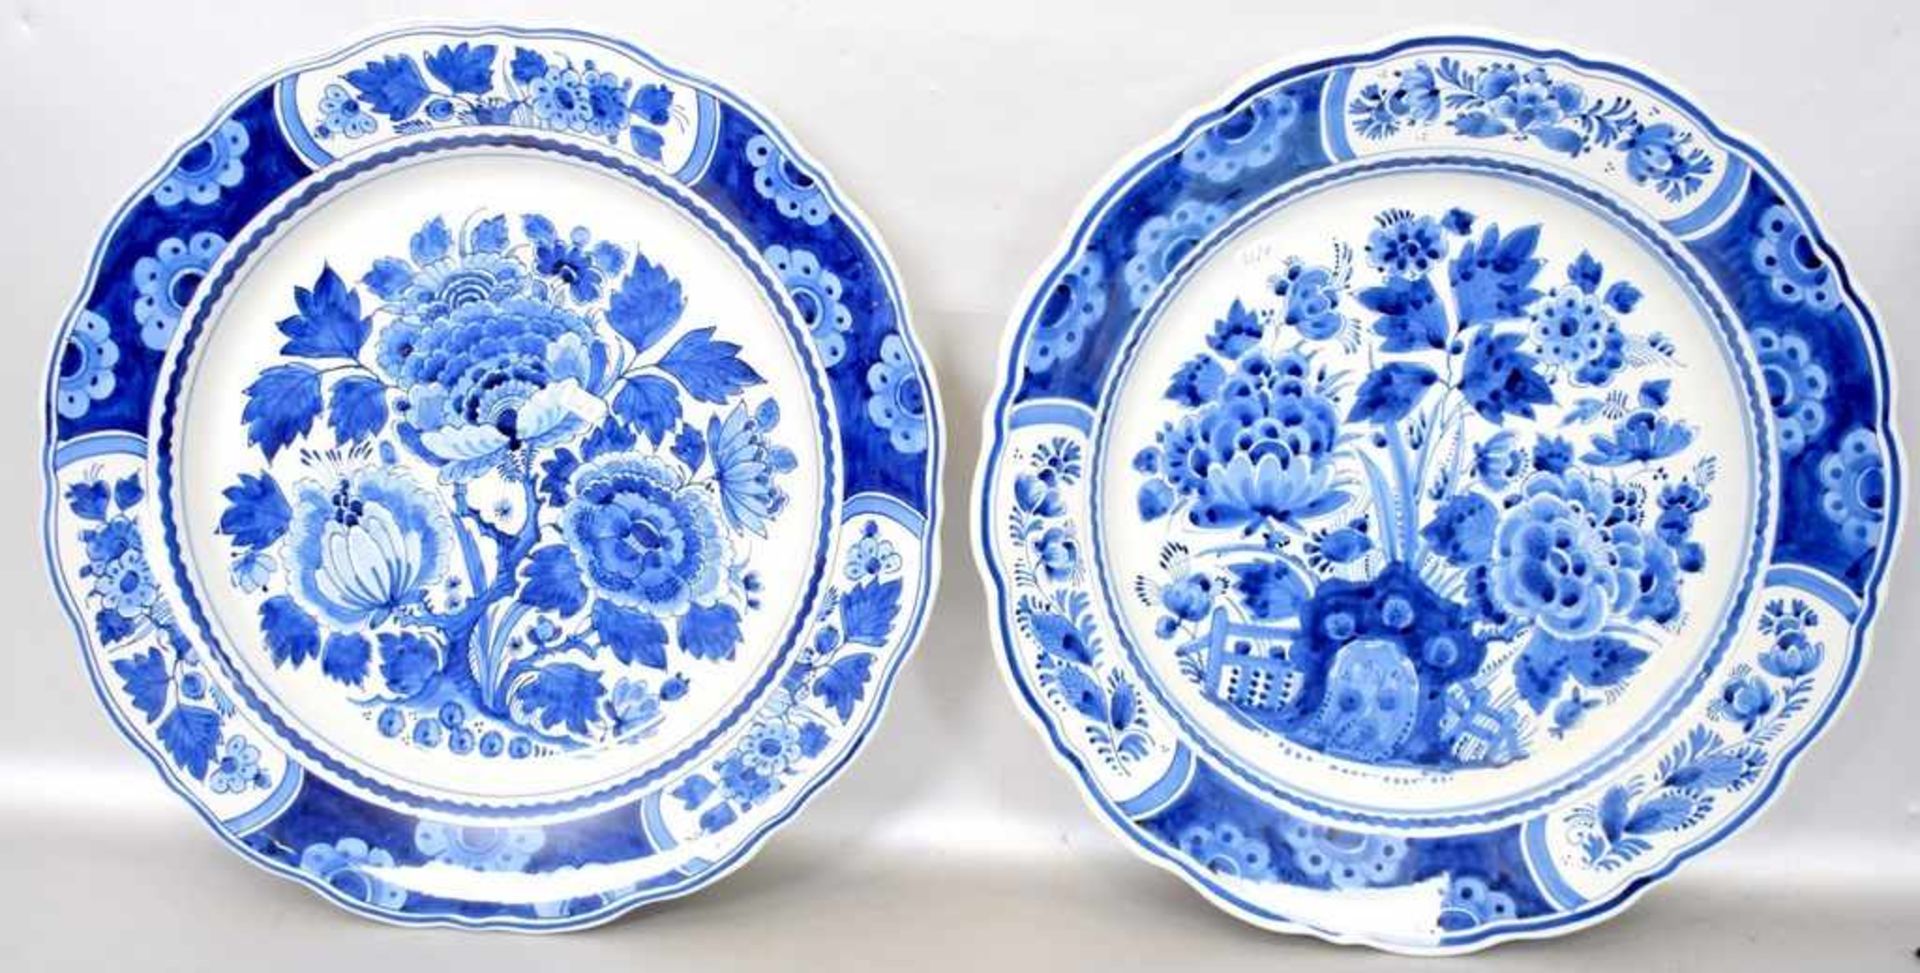 Zwei Tellerrund, breiter mit Blumen verzierter Rand, Spiegel blau bemalt, Dm 37 cm, FM Delft